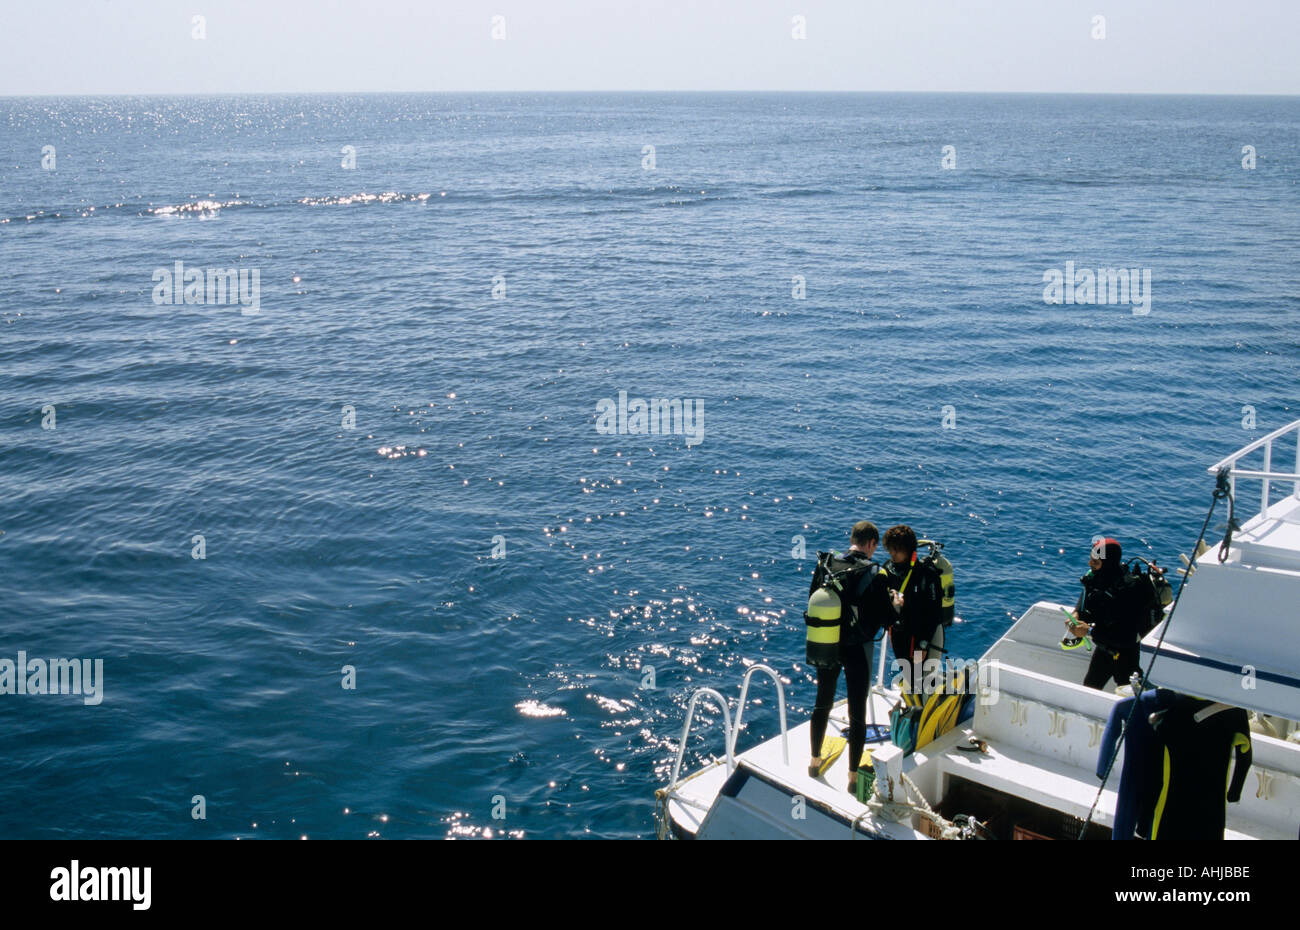 Zwei Taucher überprüfen die Ausrüstung an Bord eines Tauchboots, bevor sie einen Tauchgang beginnen, während ein dritter Taucher auf sie schaut. Hurghada, Ägypten. Stockfoto